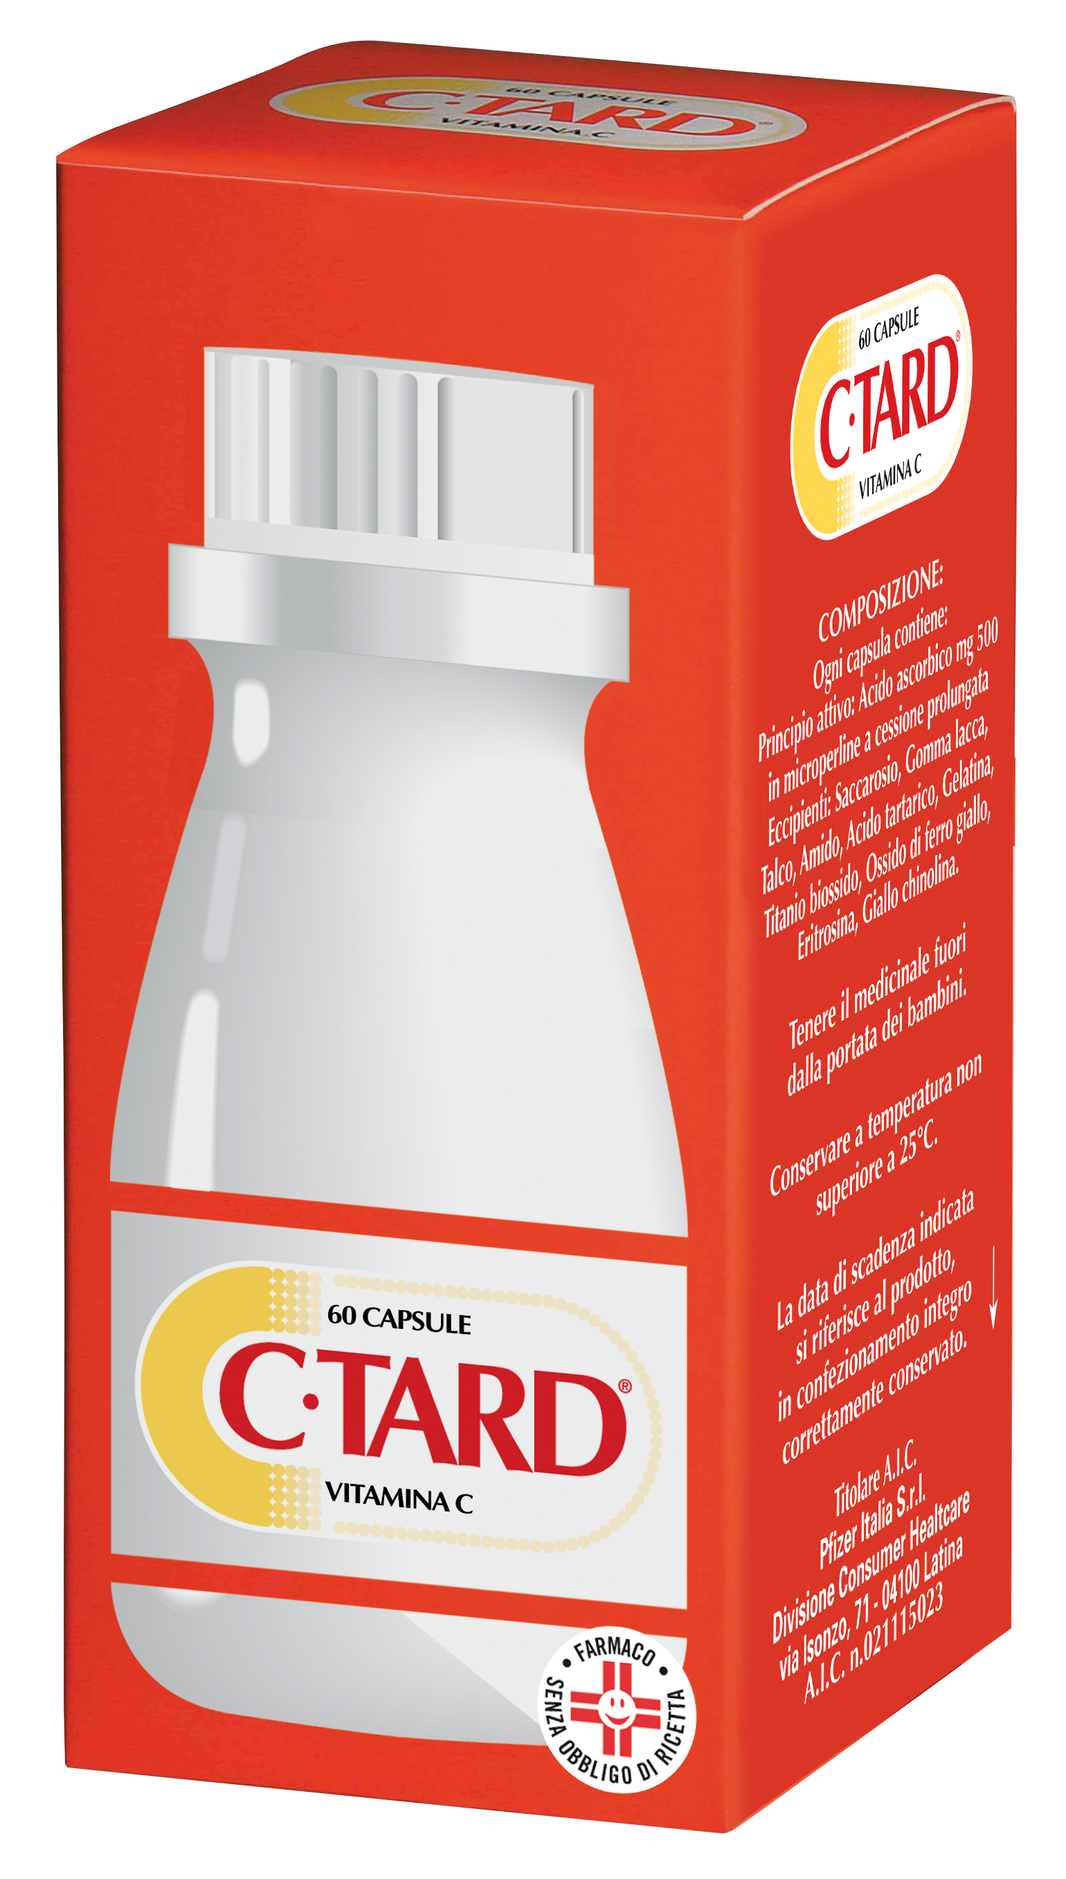 C-Tard Vitamina C 60 capsule